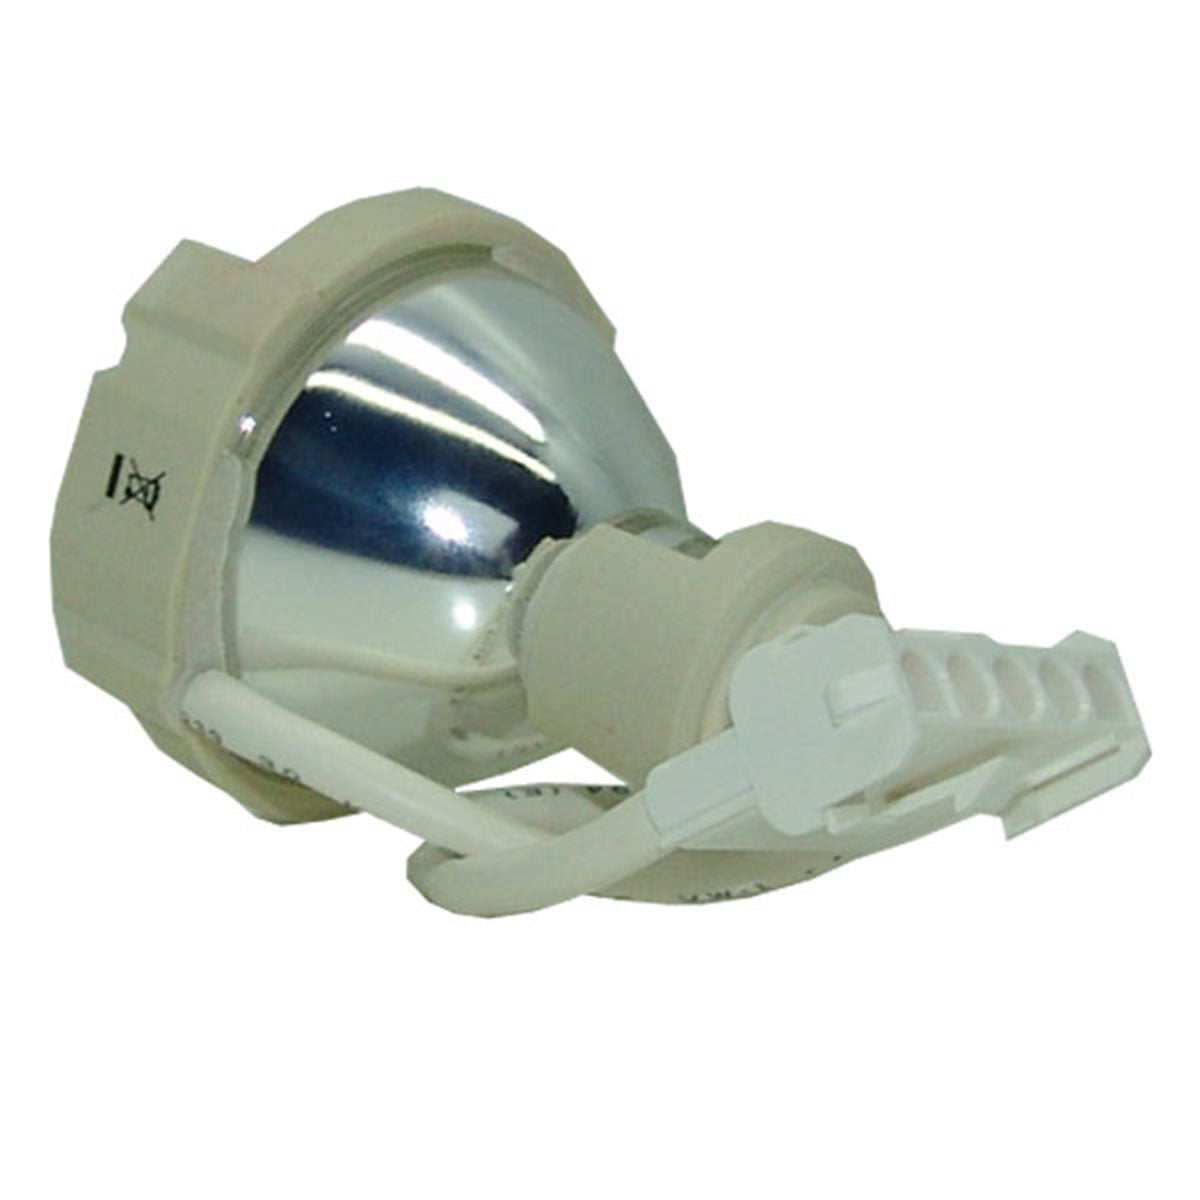 Liesegang ZU0248-04-4012 Osram Projector Bare Lamp